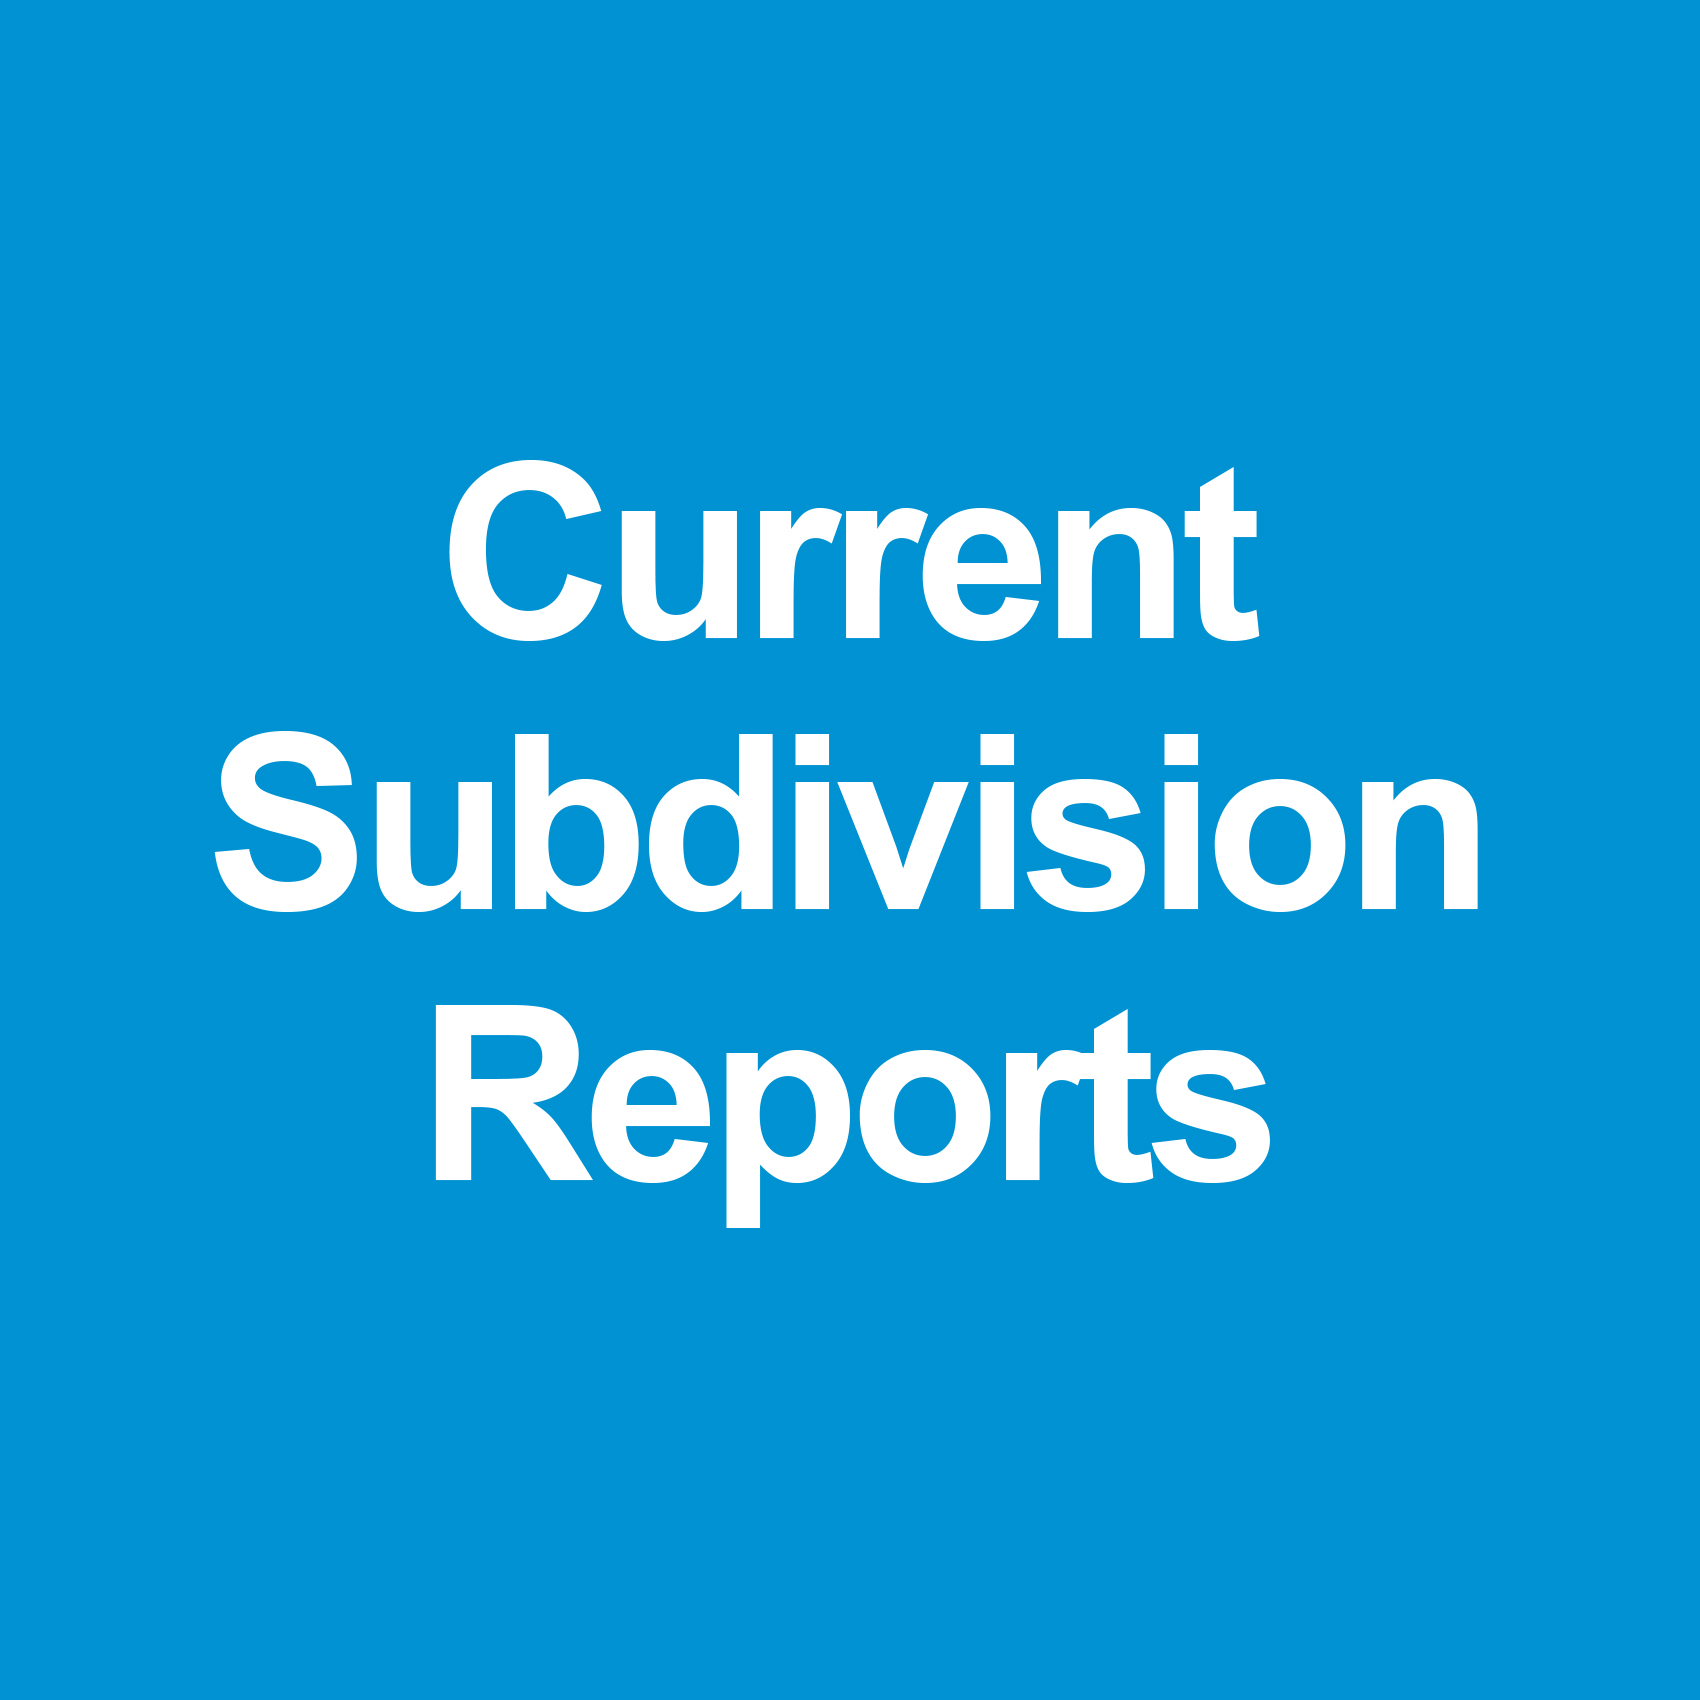 Current Subdivision Reports